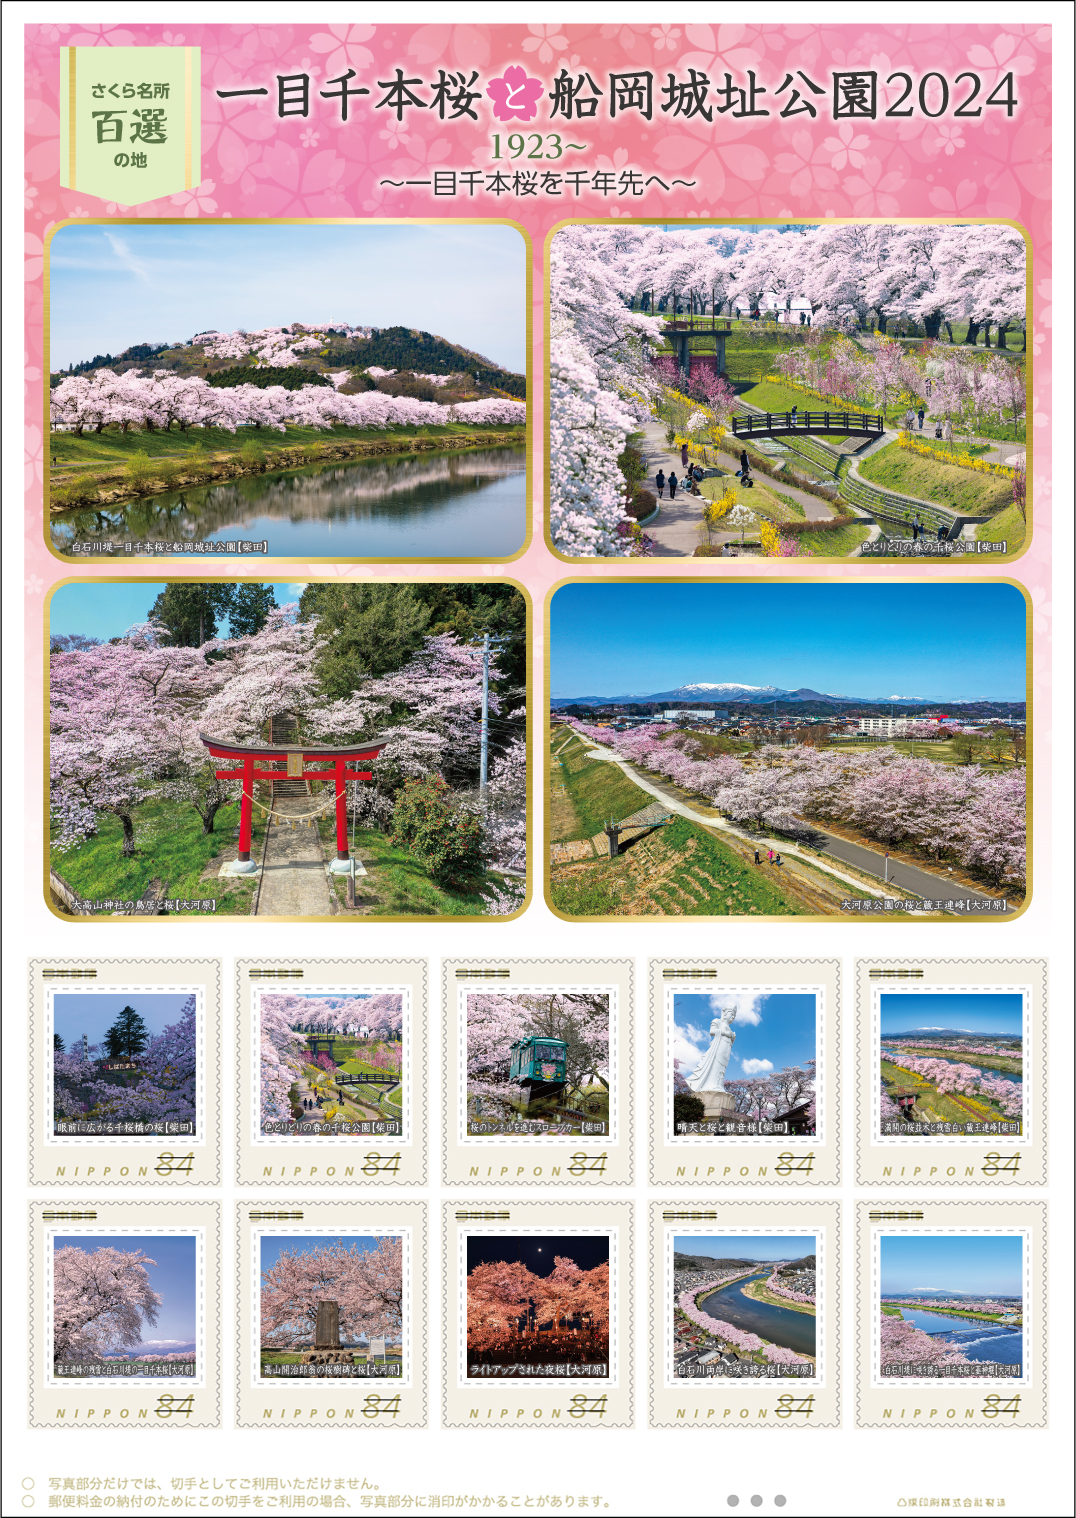 オリジナル フレーム切手「一目千本桜と船岡城址公園2024」の 販売開始および贈呈式の開催